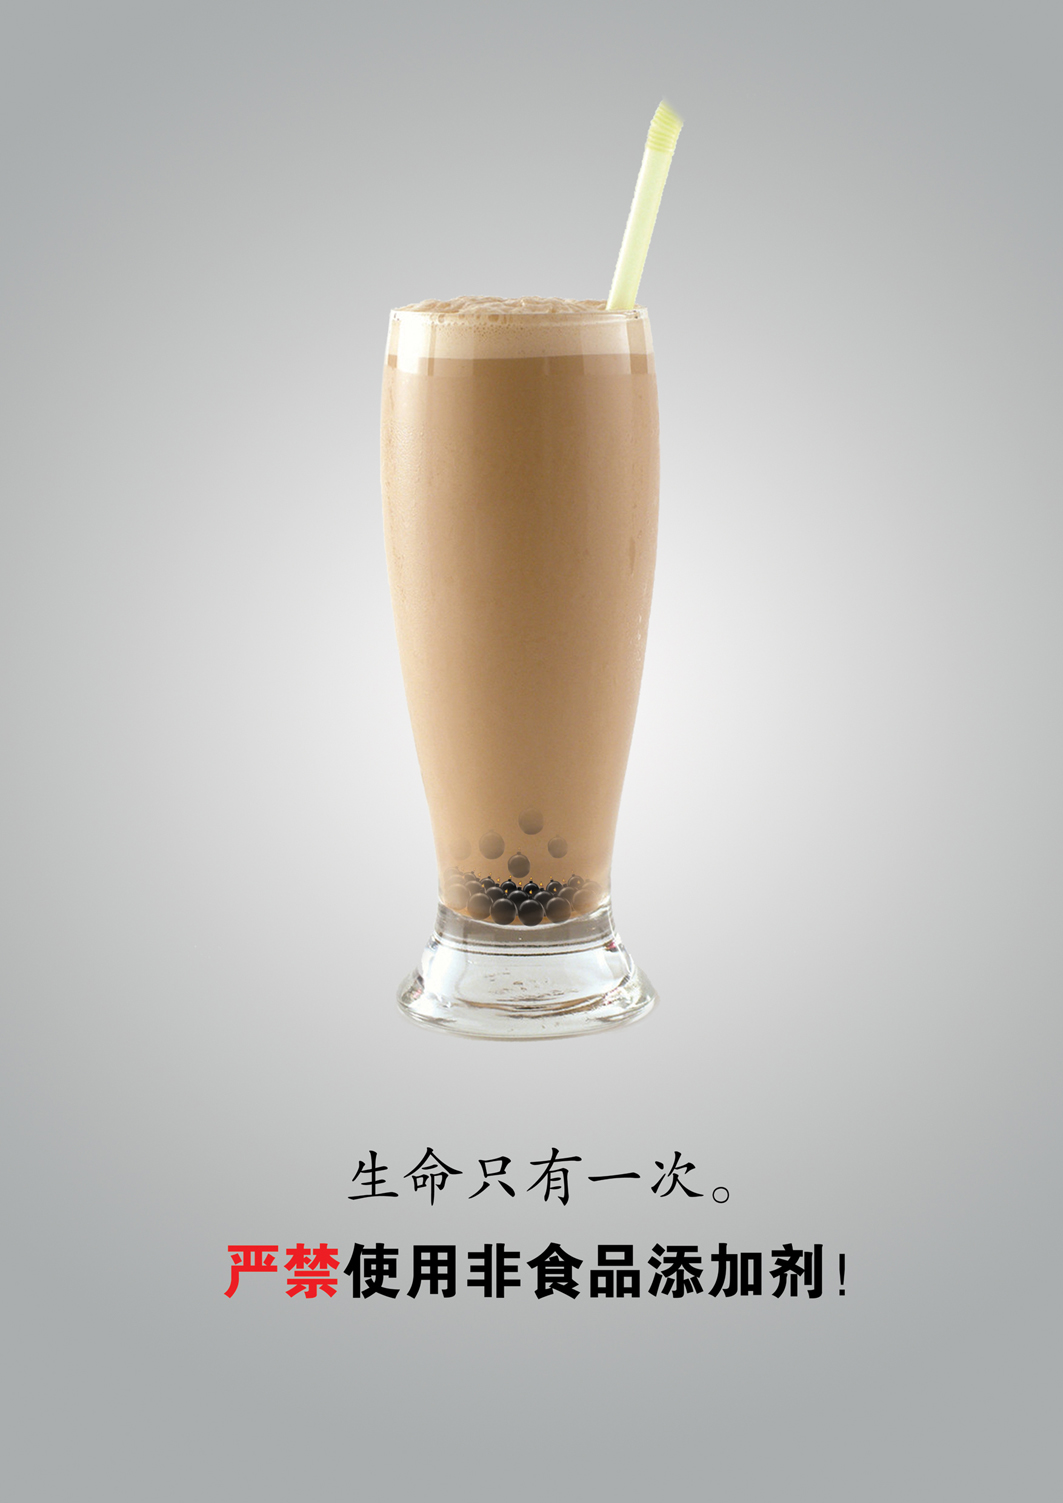 食品安全系列——珍珠奶茶篇RGB.jpg